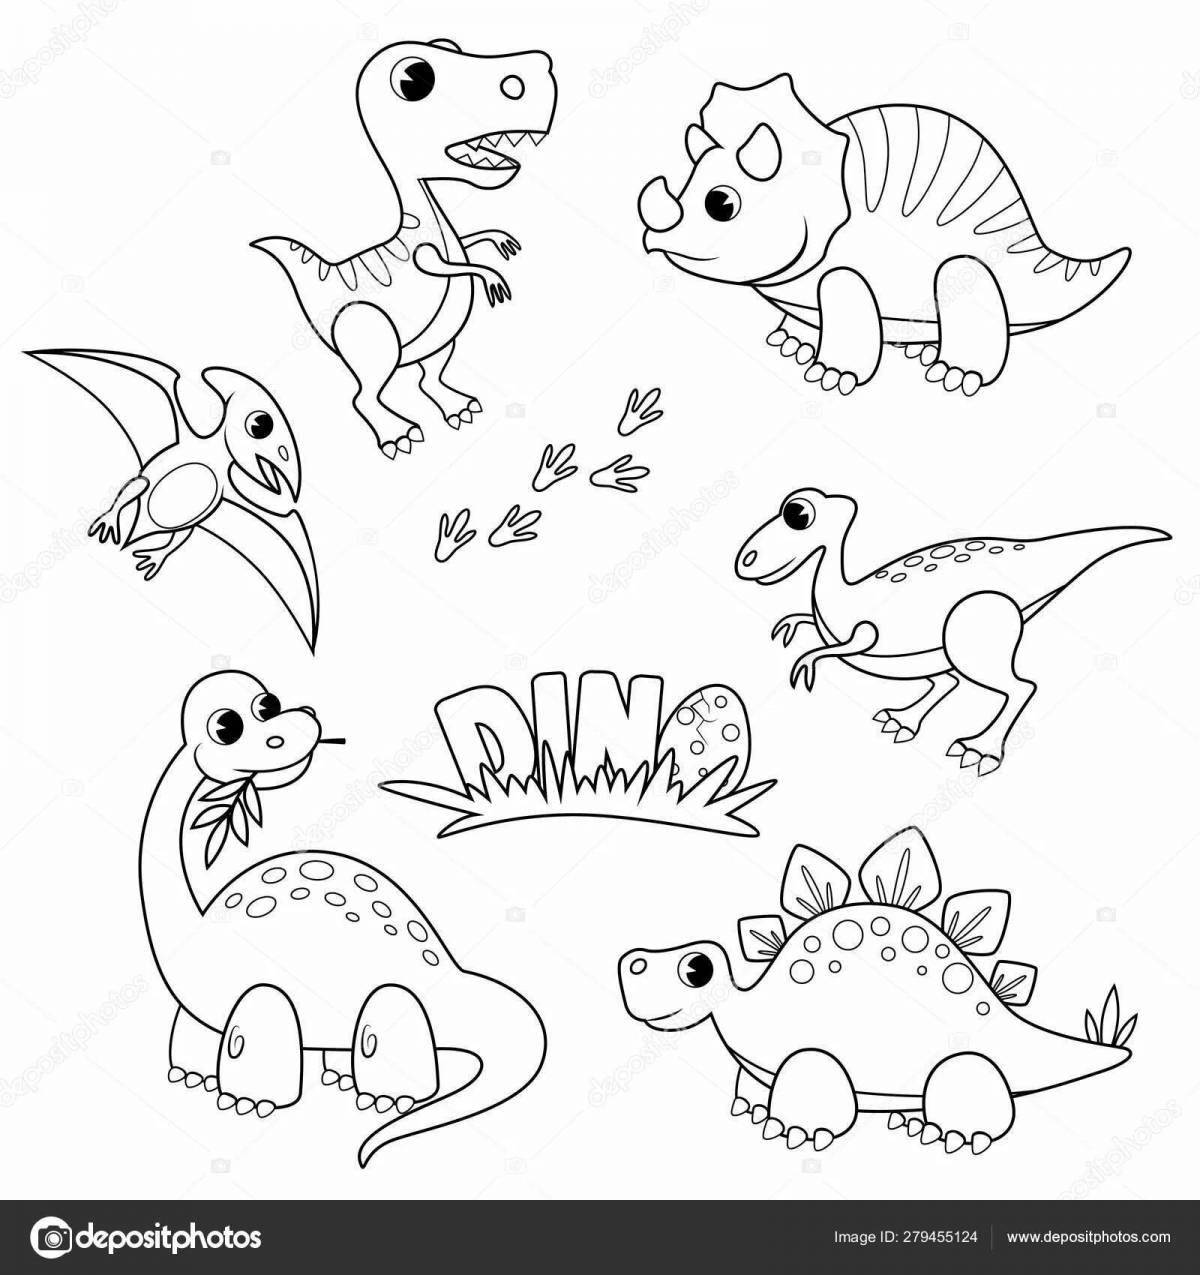 Funny dinosaur land poster